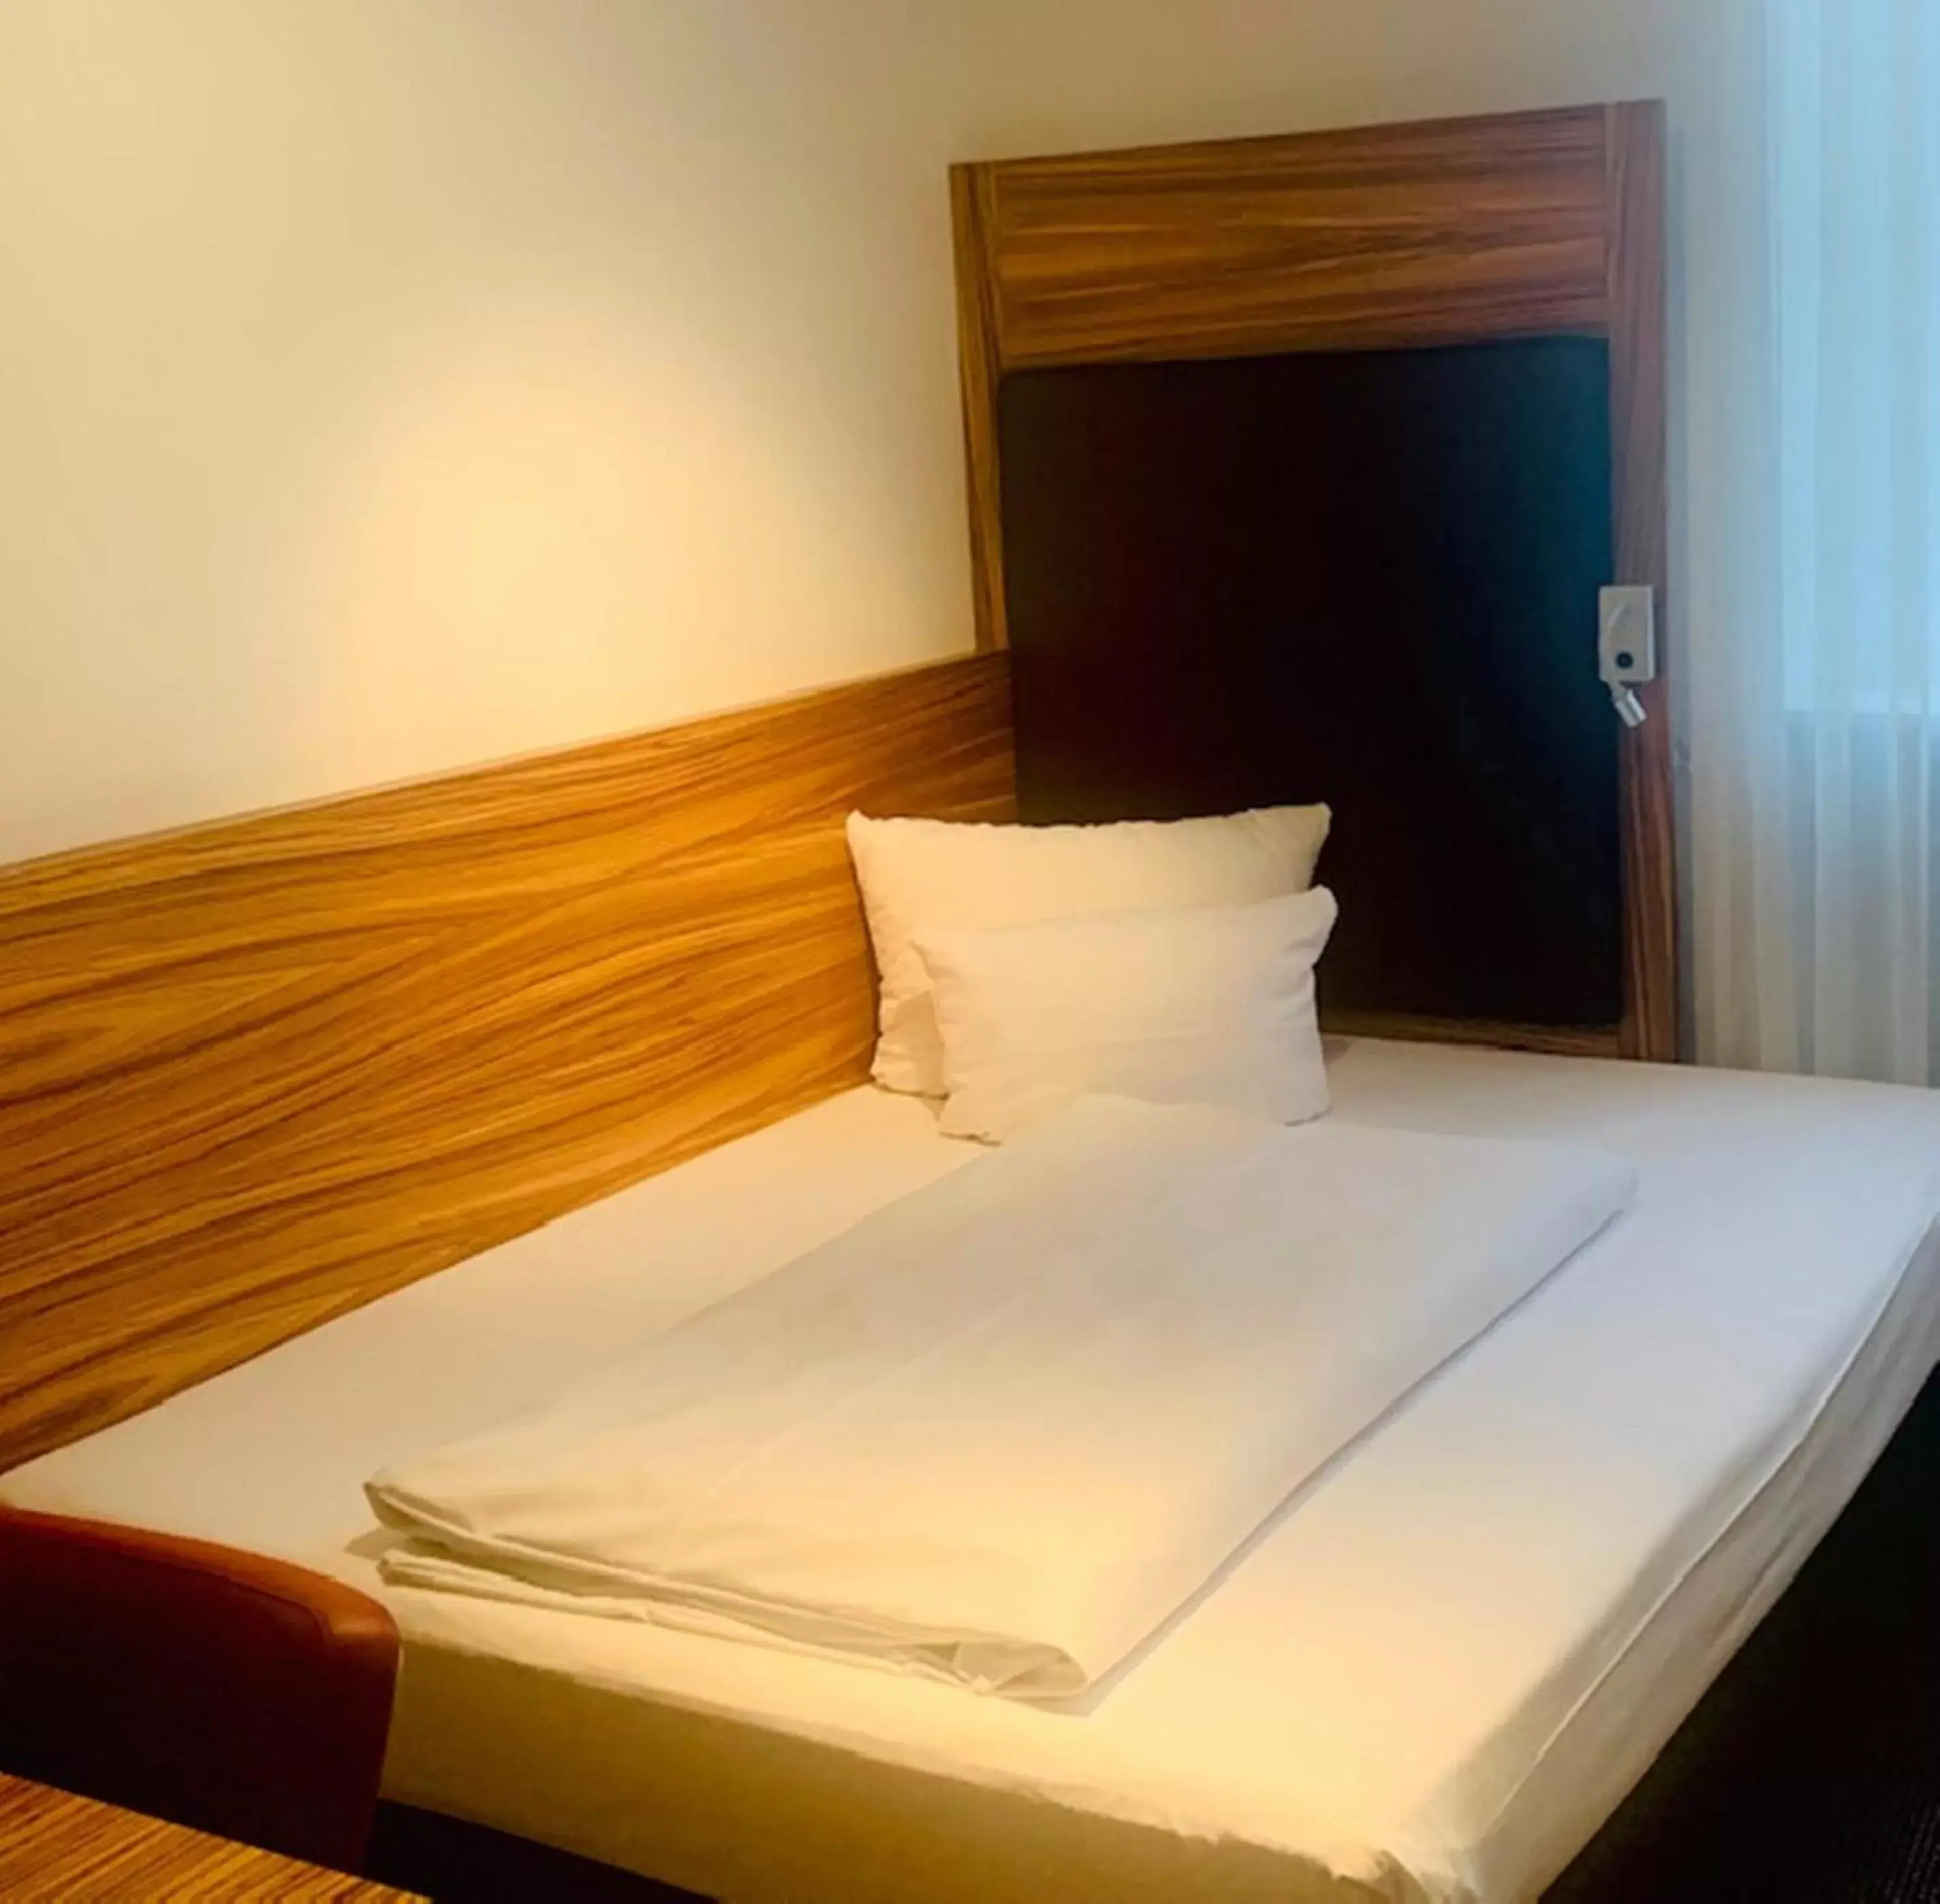 Bed in ACHAT Hotel Regensburg Herzog am Dom